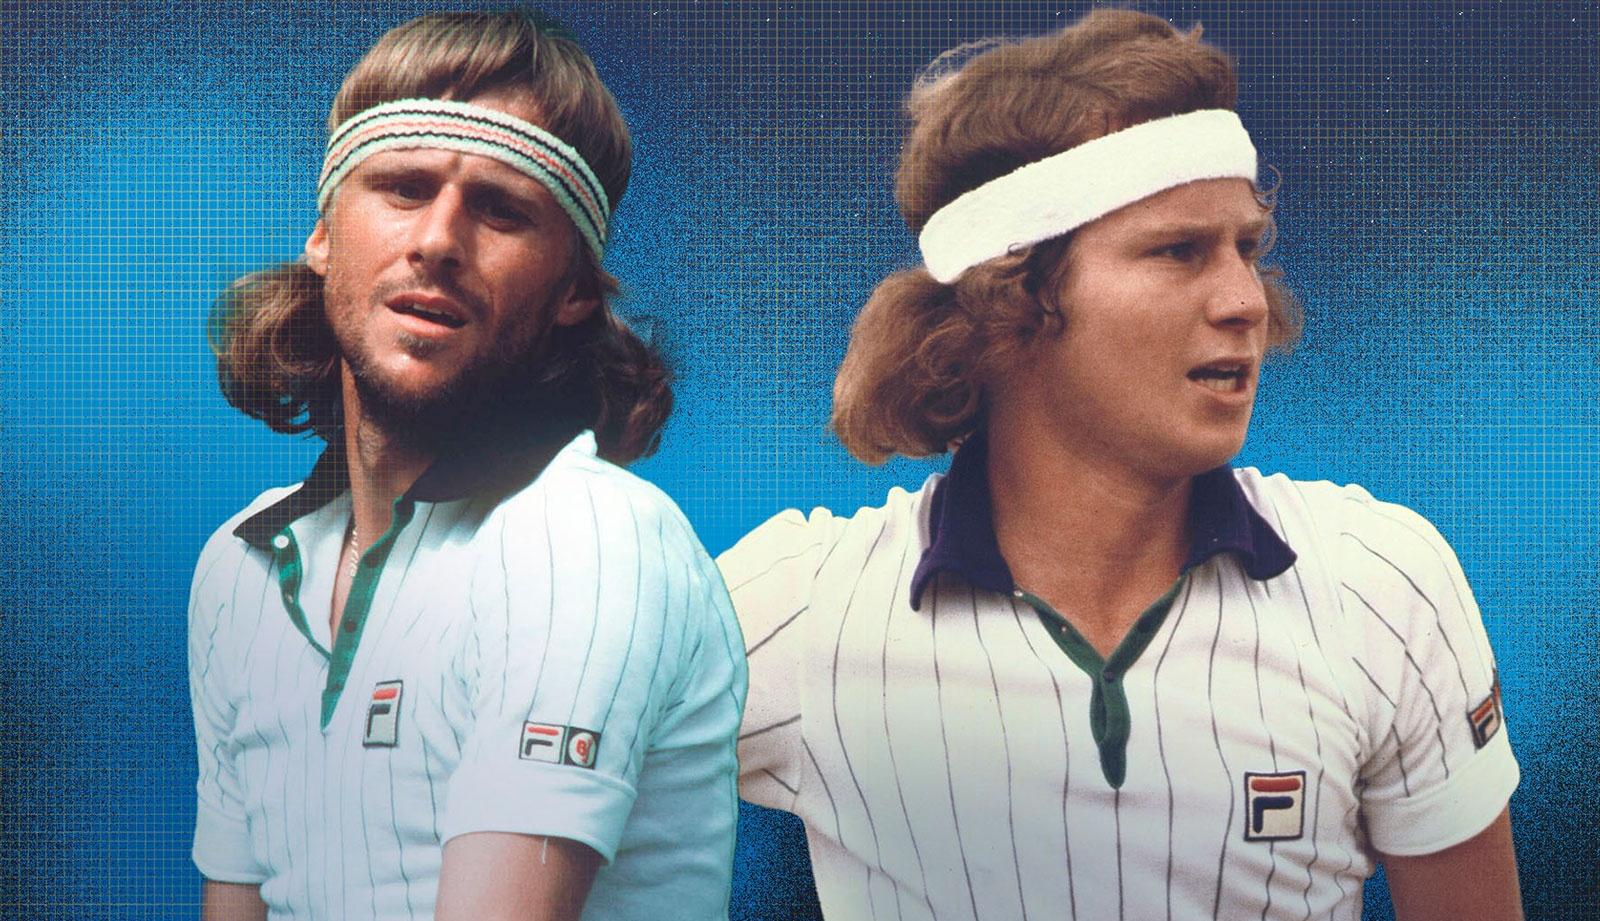 Gods of Tennis: Bjorn Borg and John McEnroe